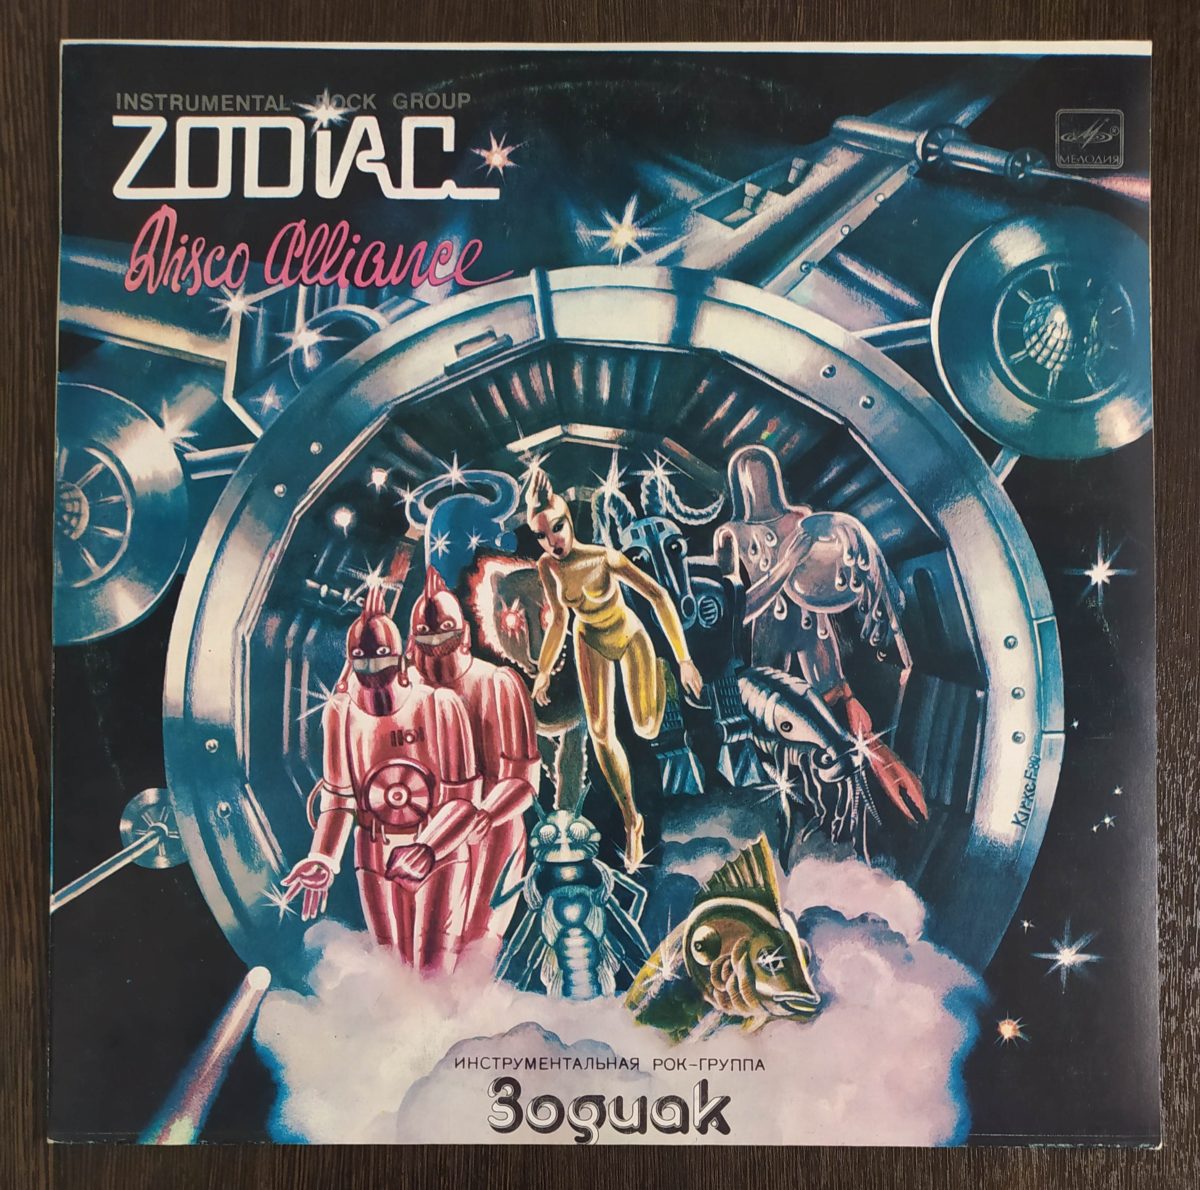 Zodiac группа пластинки. Zodiac группа обложка. Зодиак Disco Alliance 1980. Zodiac Disco Alliance обложка.